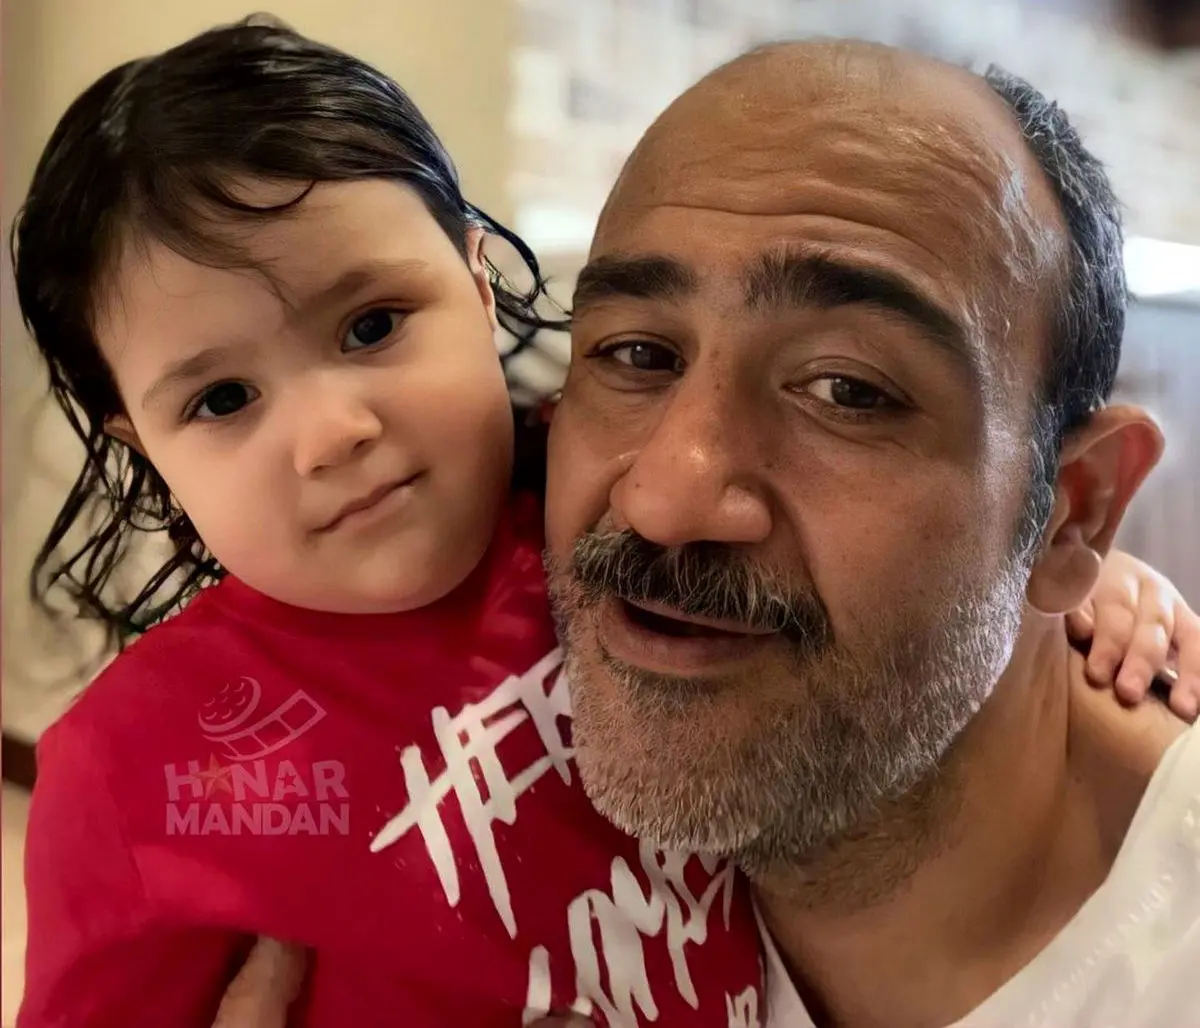 ویدئویی از روز پدر دختری مهران غفوریان و هانا